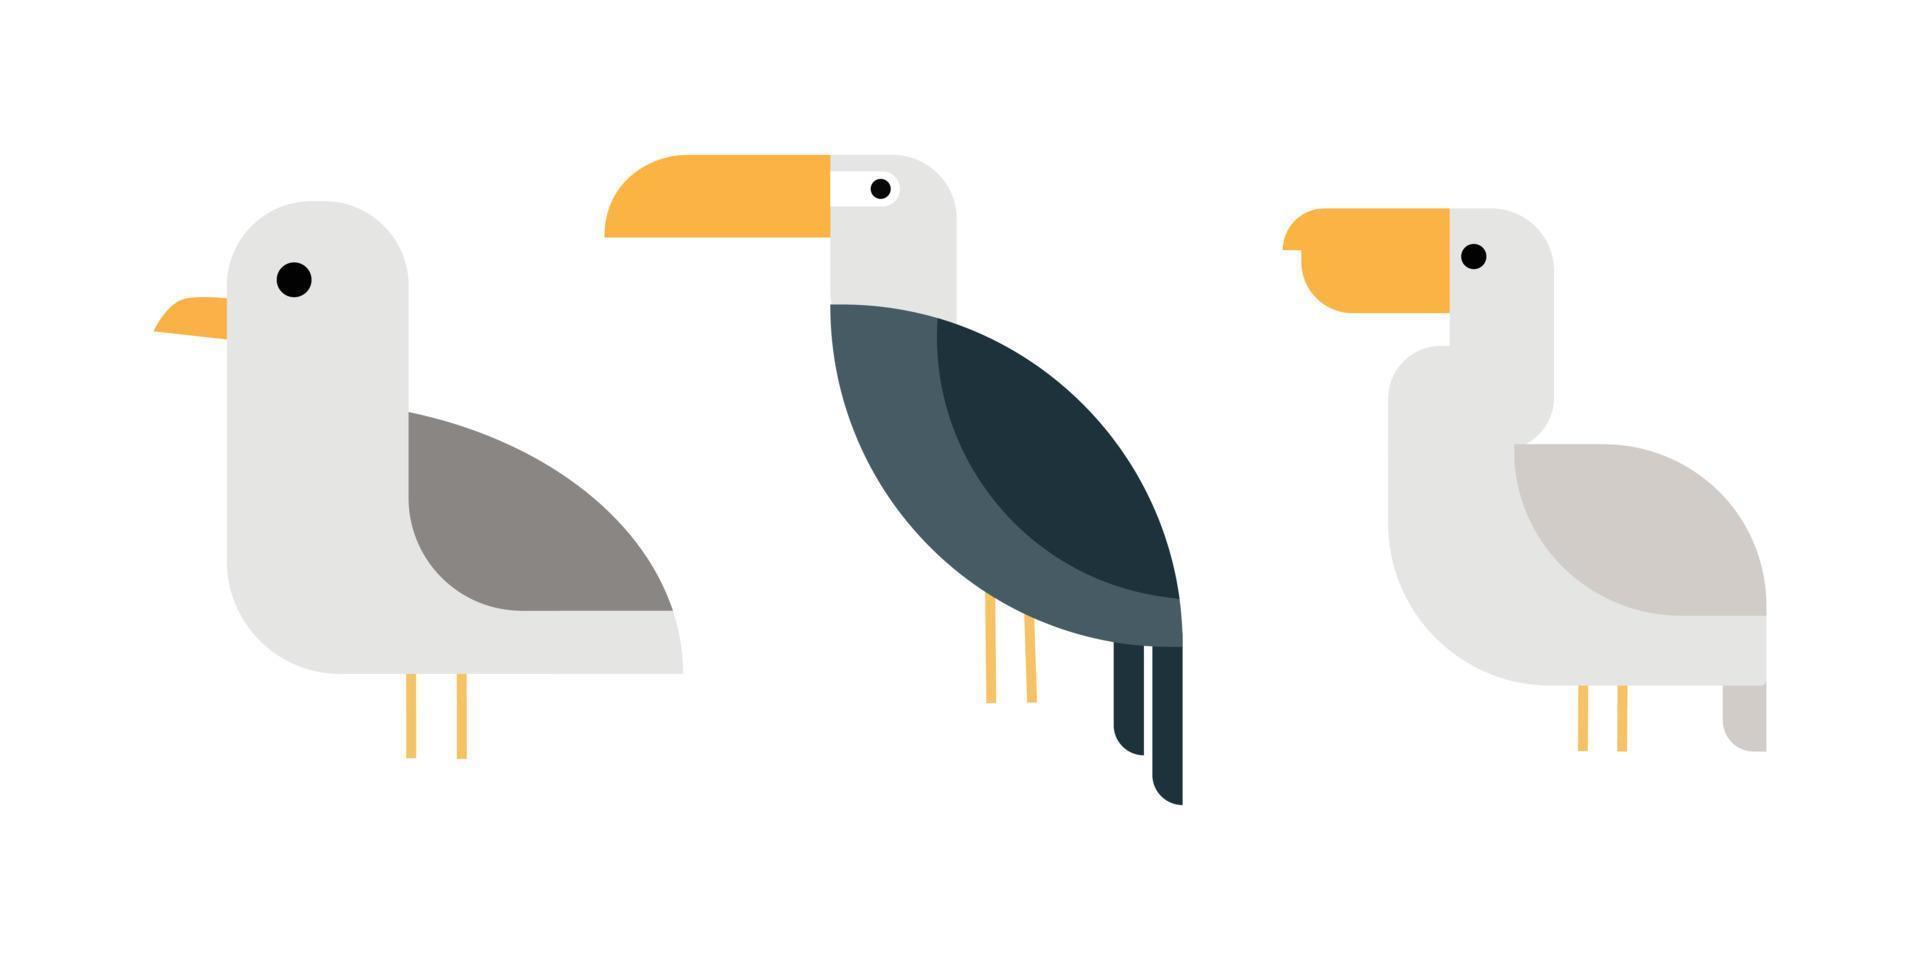 ilustrações de design plano de pássaros em cores cinza. vetor